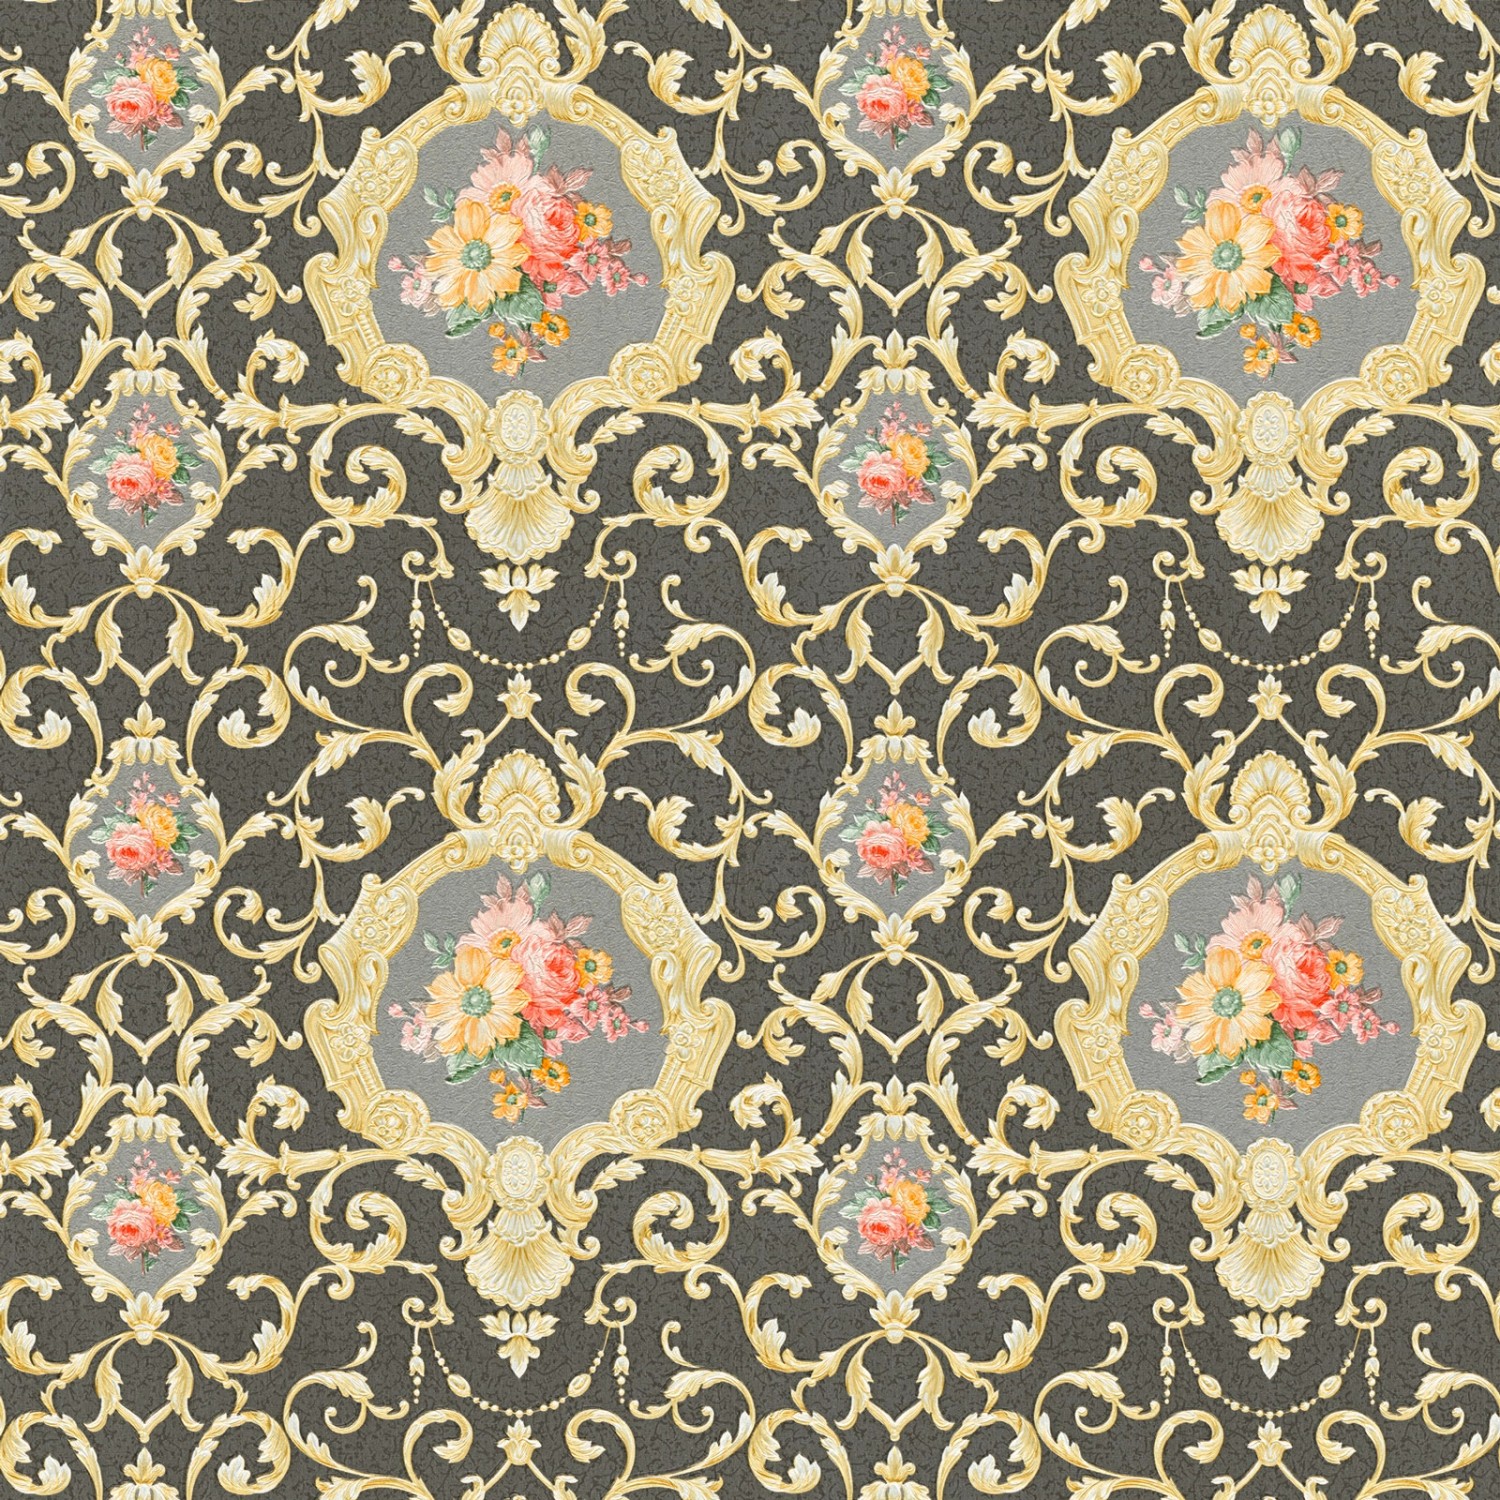 Bricoflor Französische Tapete Schwarz Gold Bunt Blumen Vliestapete mit Ornament im Rokoko Stil Elegante Barock Wandtapet